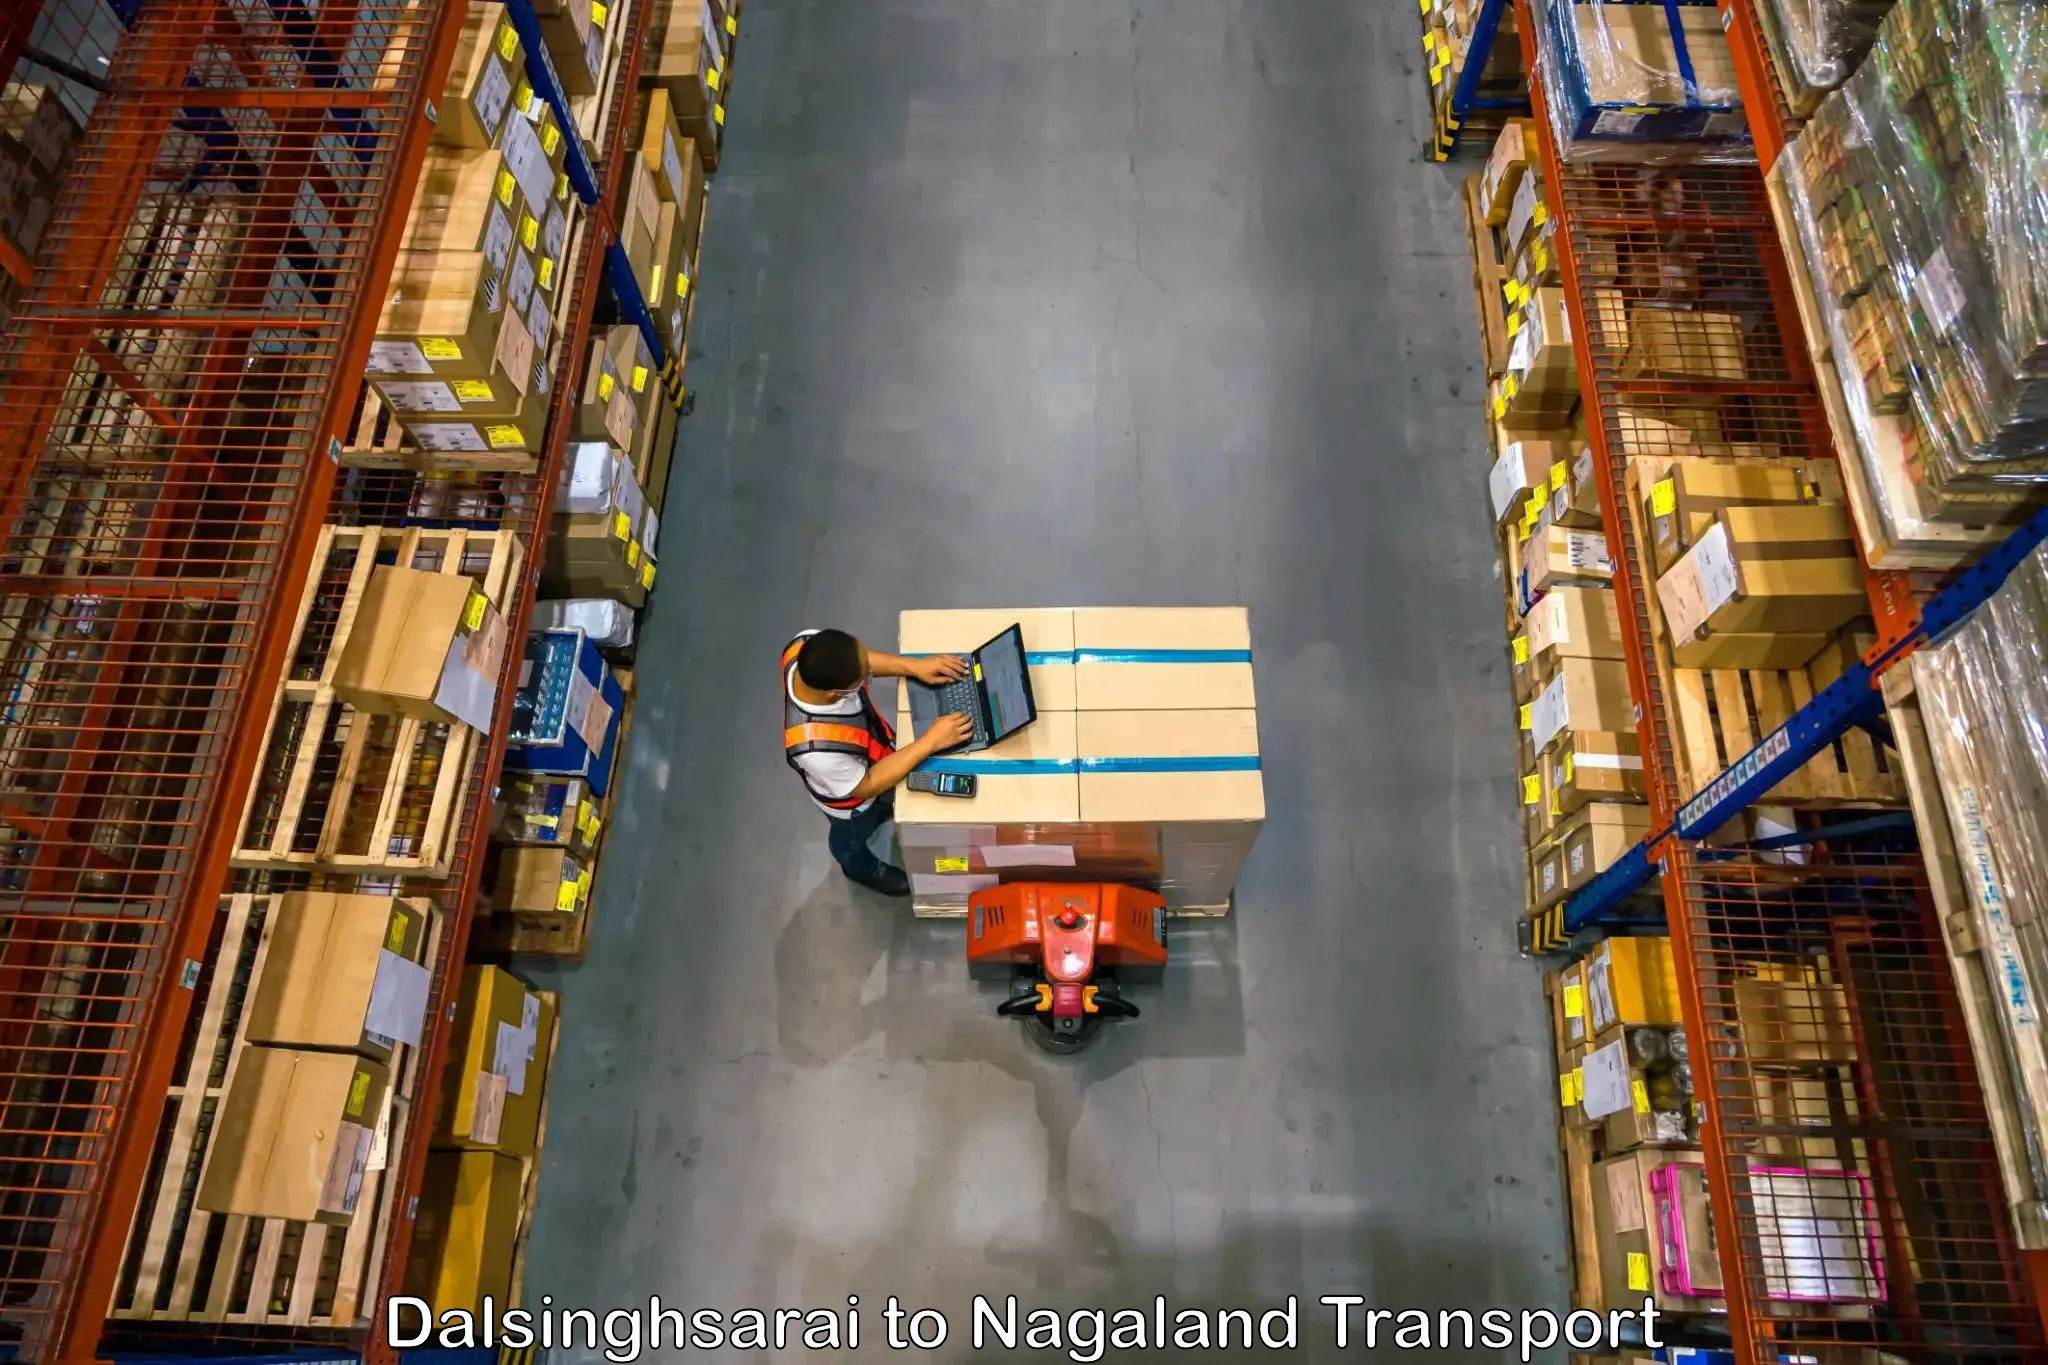 Furniture transport service Dalsinghsarai to Tuensang